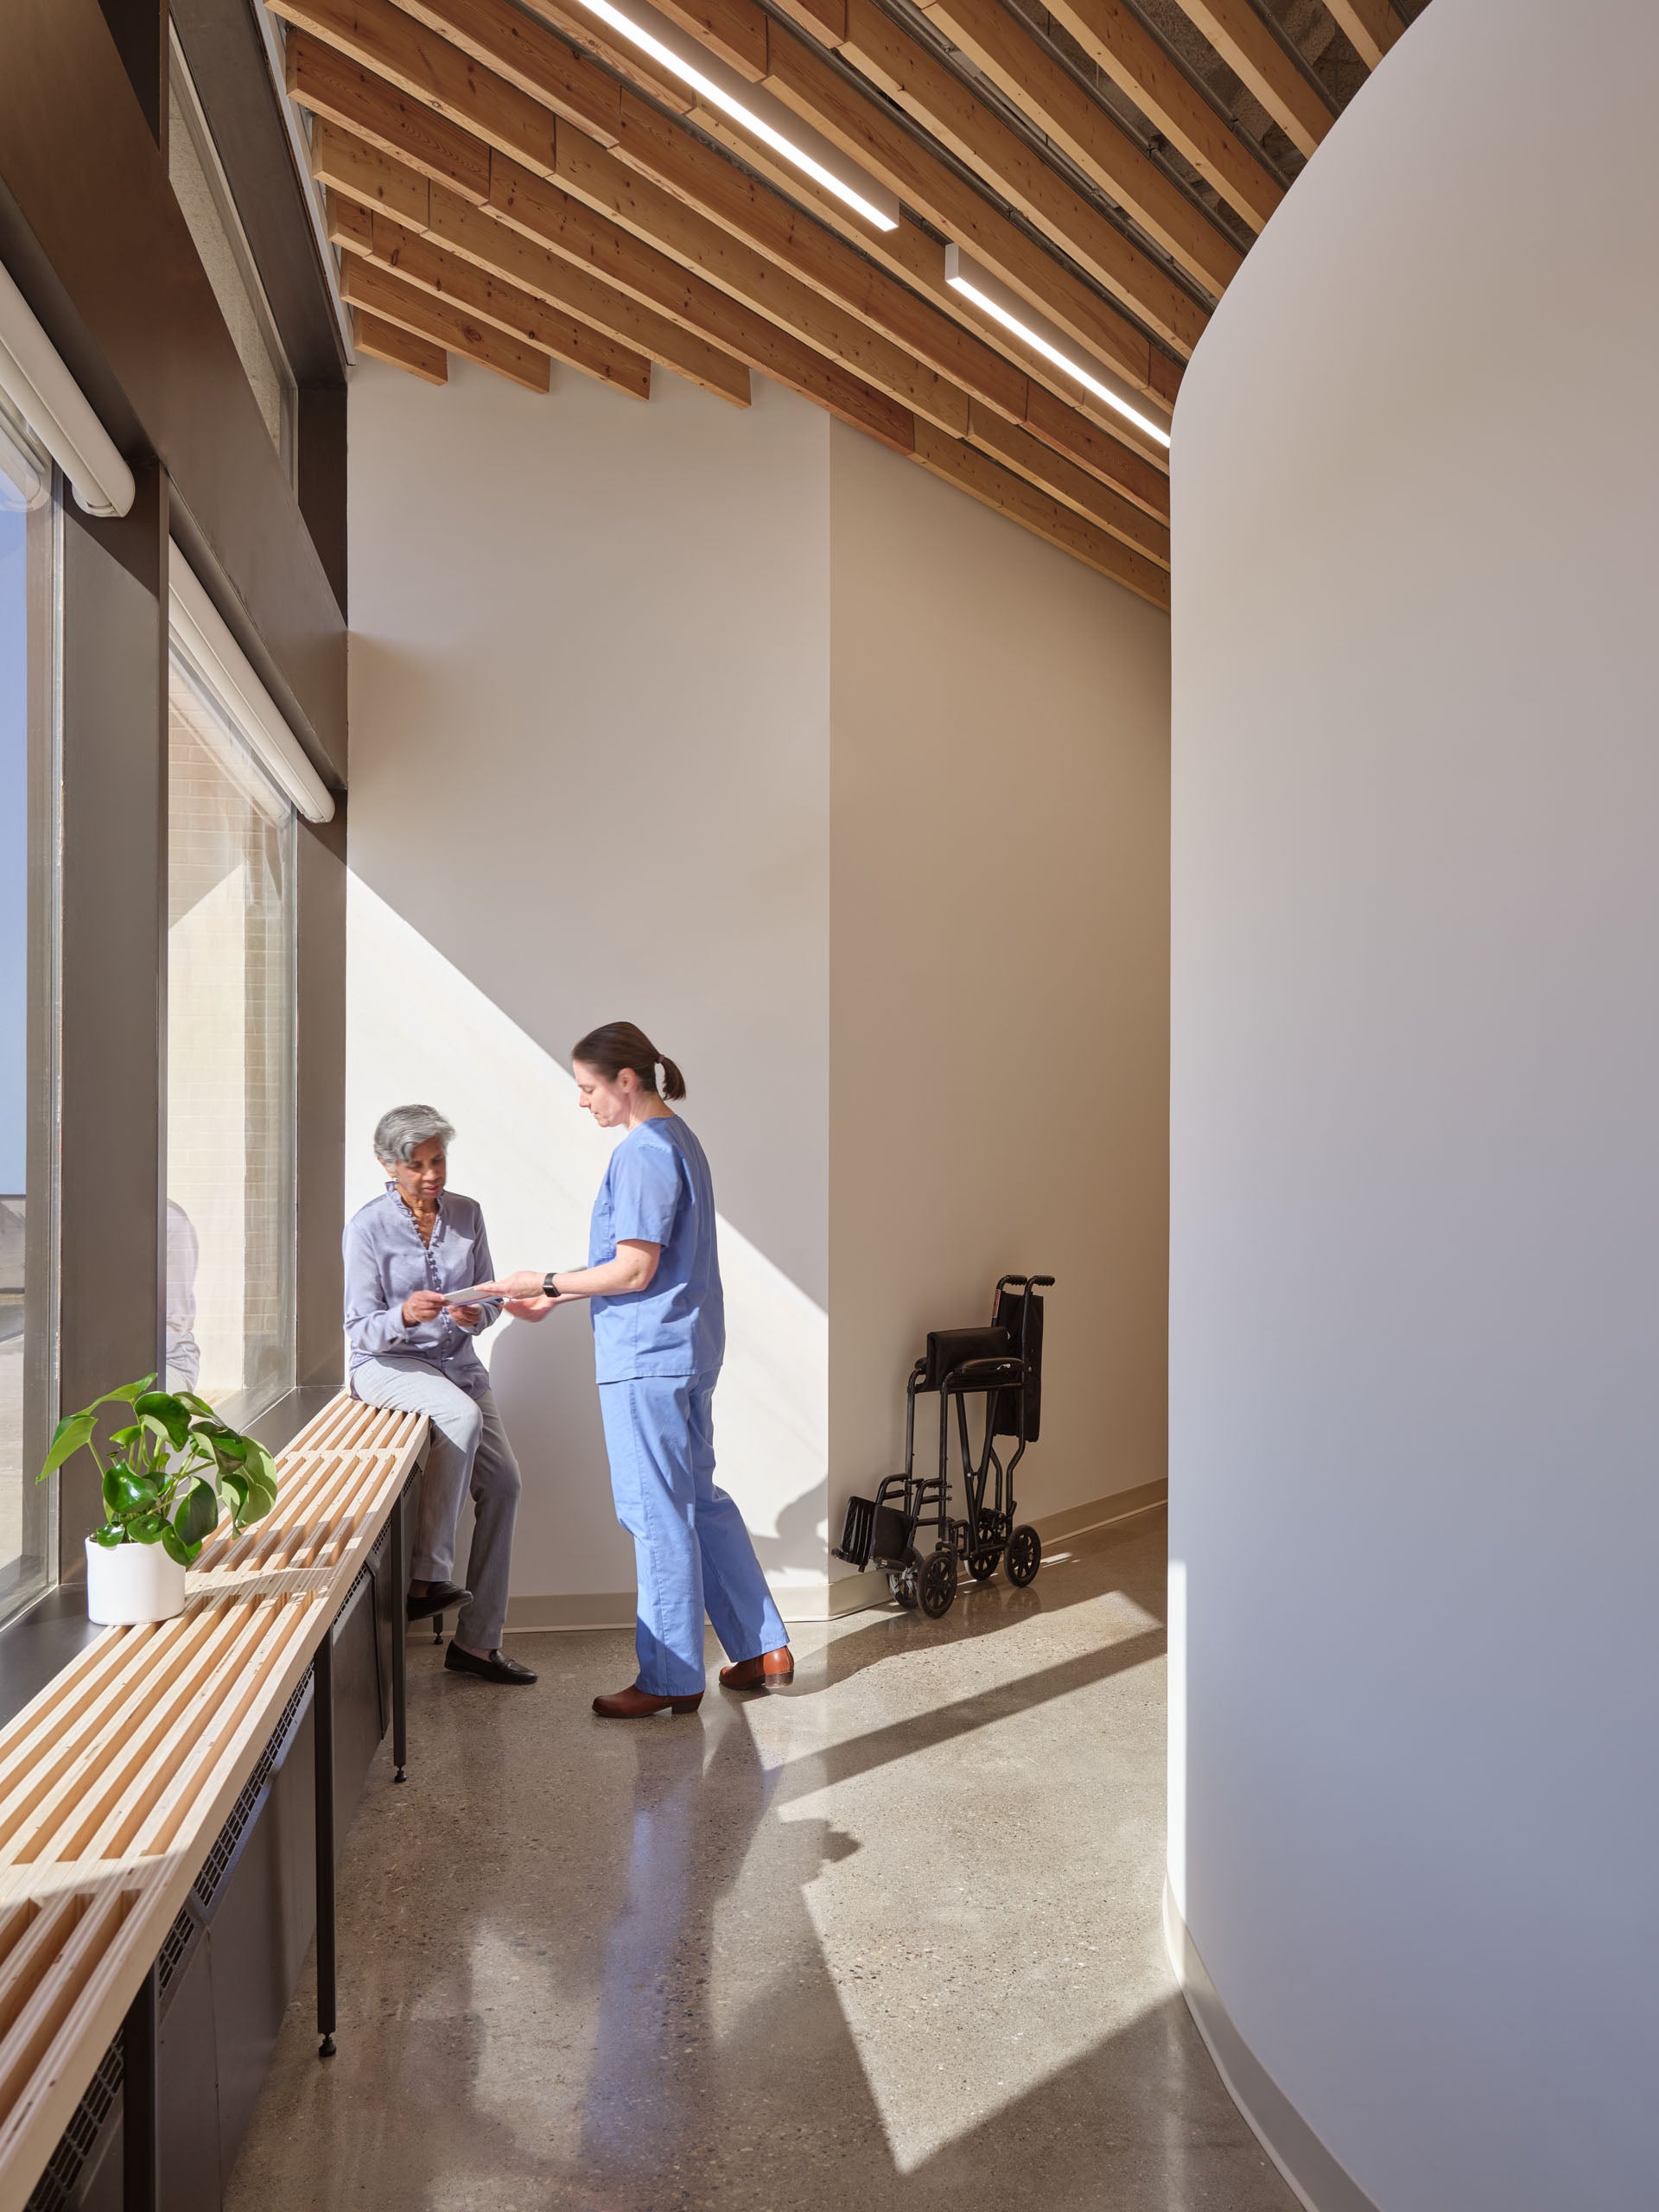 Patient corridor of Galt Health Clinic design by fonskea studio